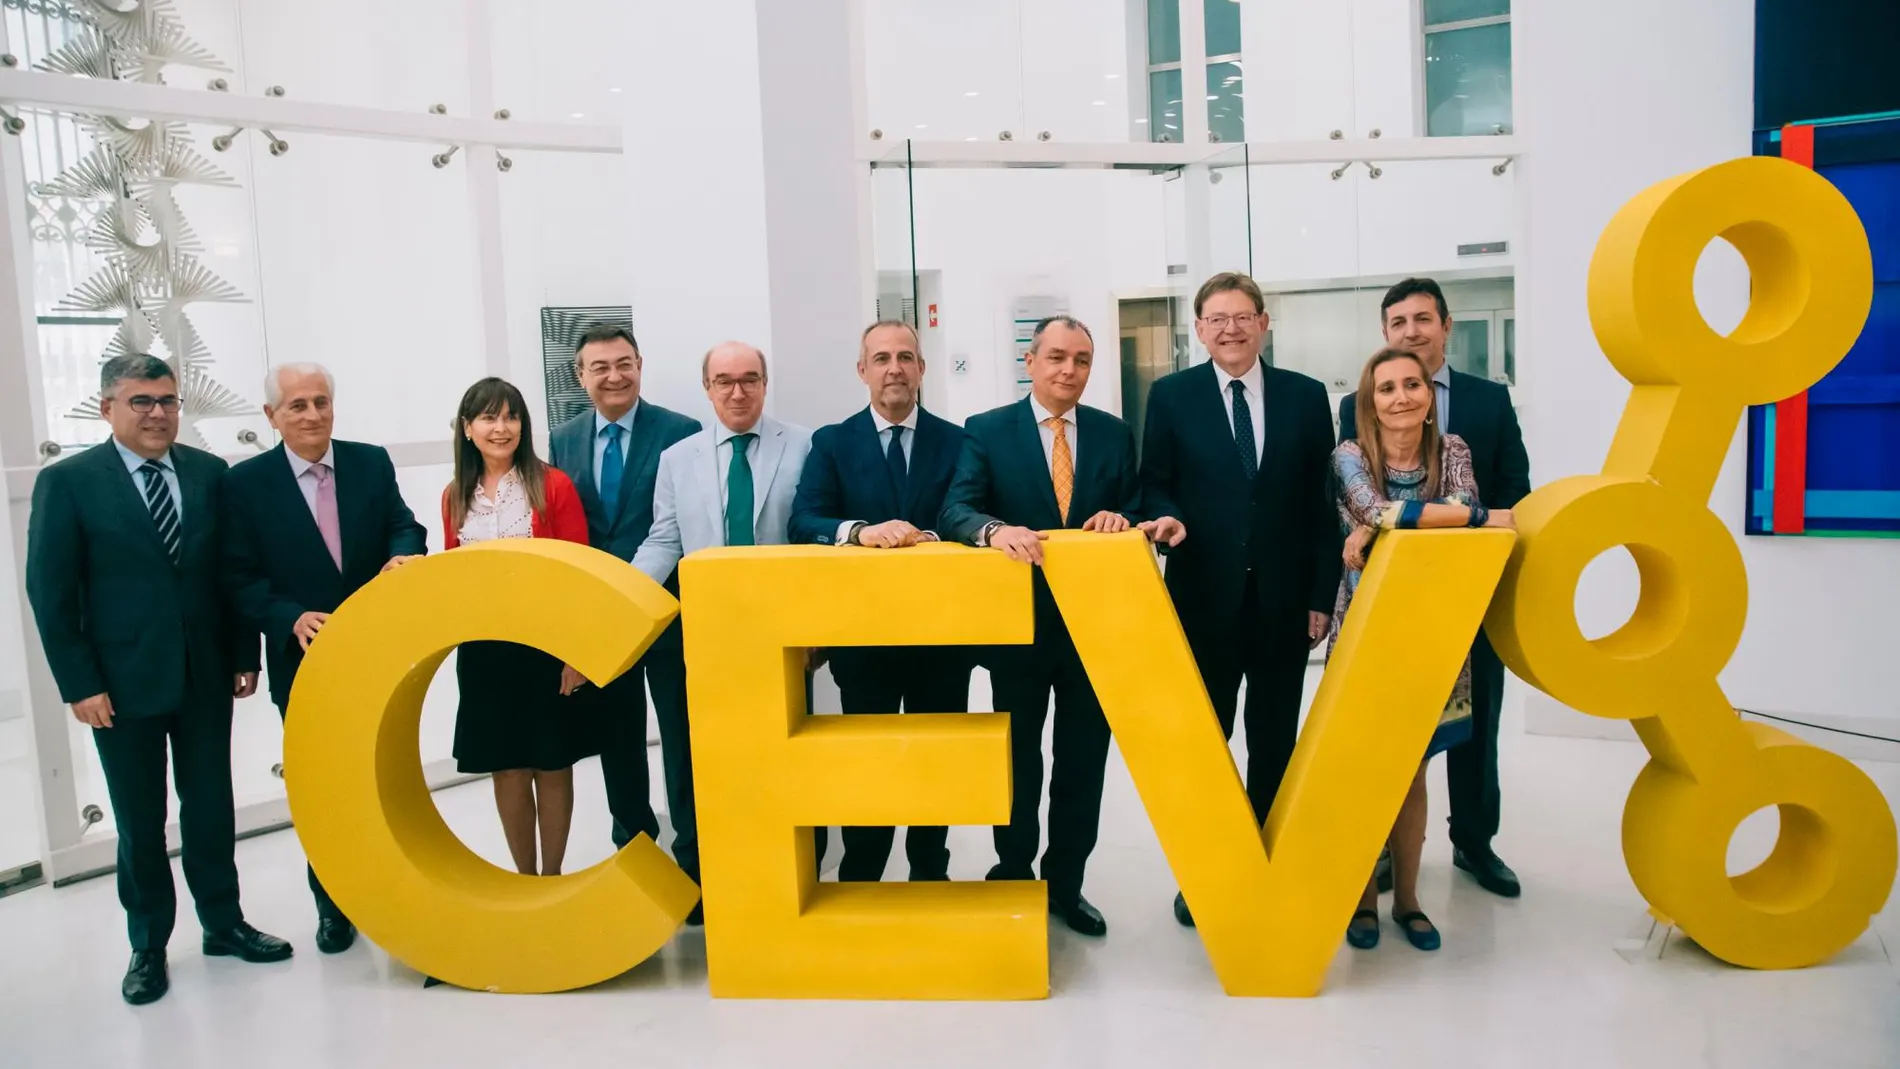 Los miembros de la Junta directiva de la Confederación Empresarial de la Comunitat Valenciana (CEV), ayer junto al presidente de la Generalitat valenciana, Ximo Puig